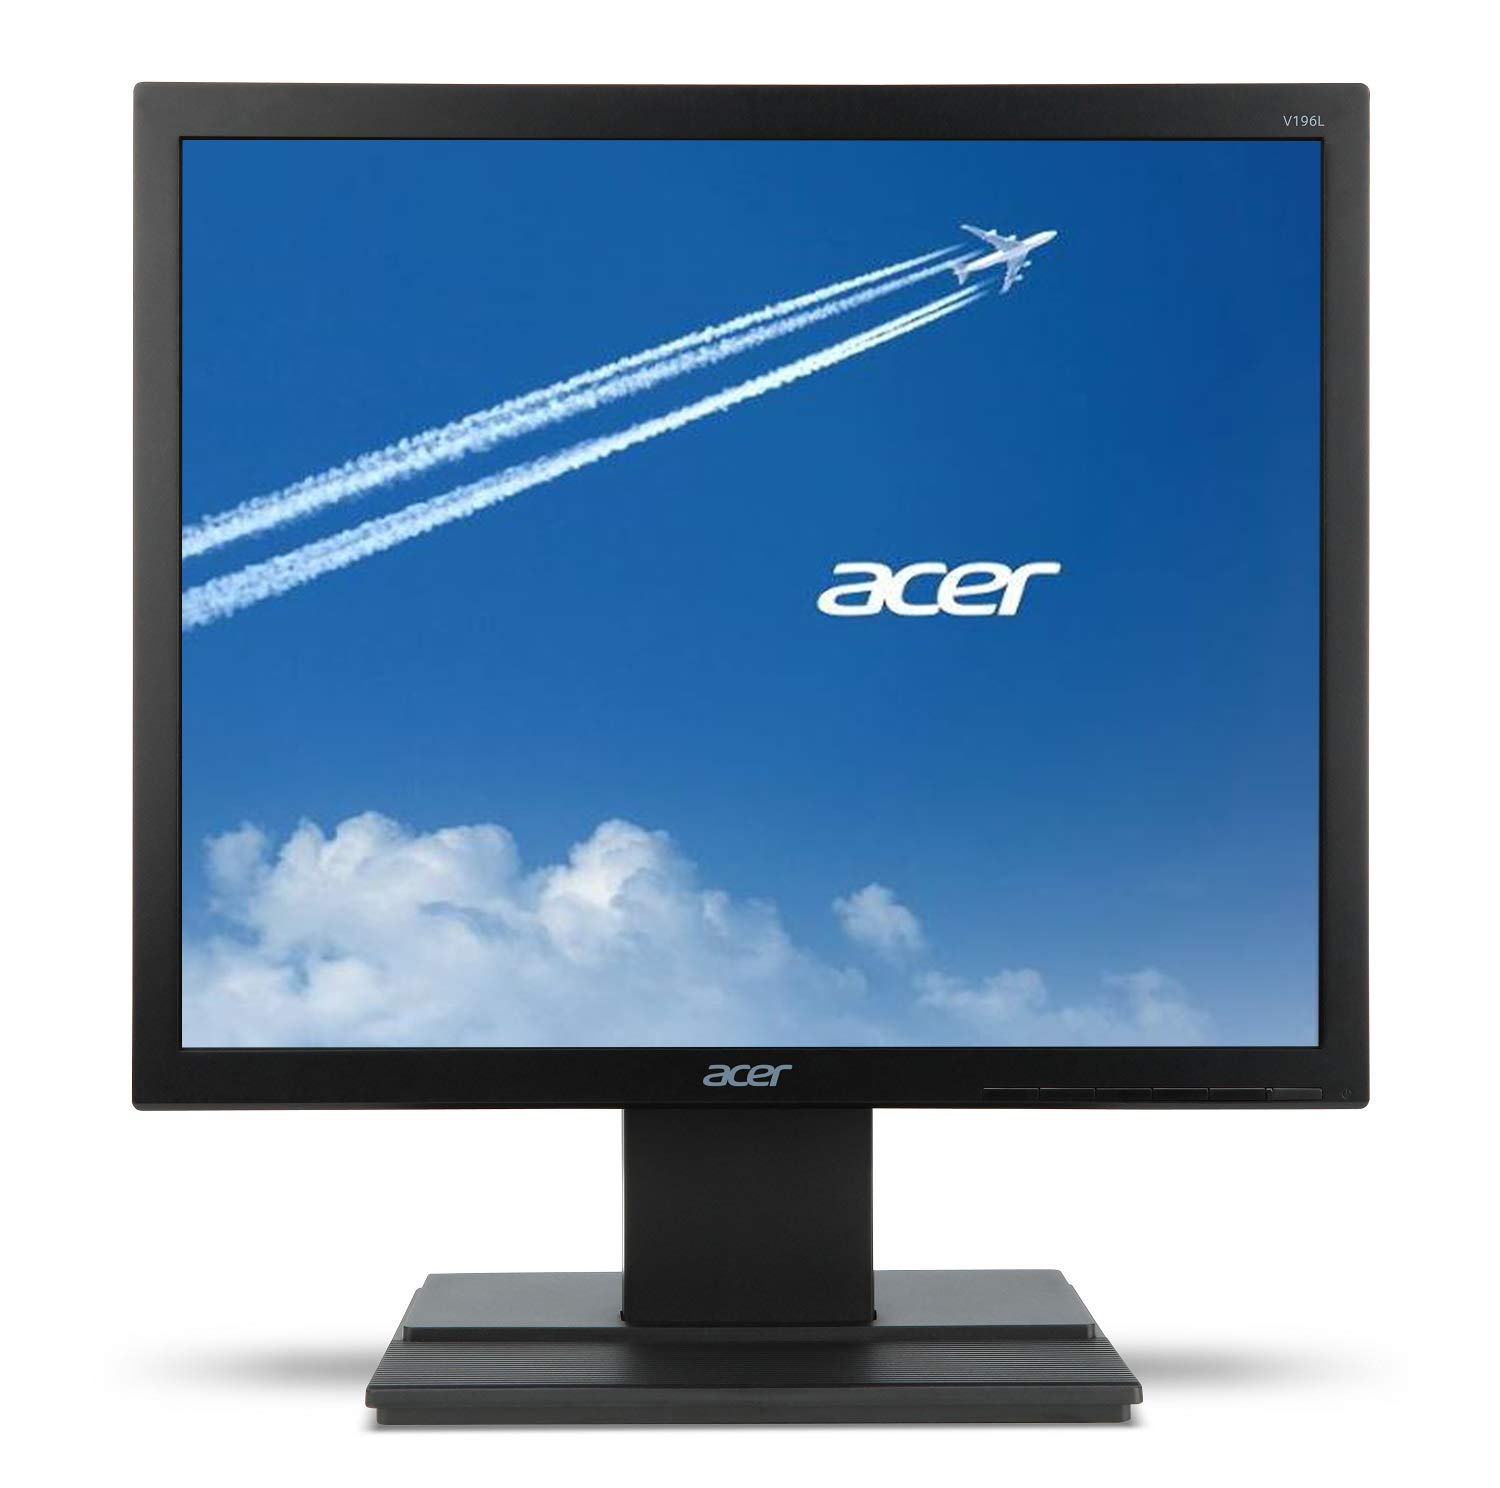 Acer V196L Bb 19 フィート HD (1280 x 1024) IPS モニター (VGA ポー...